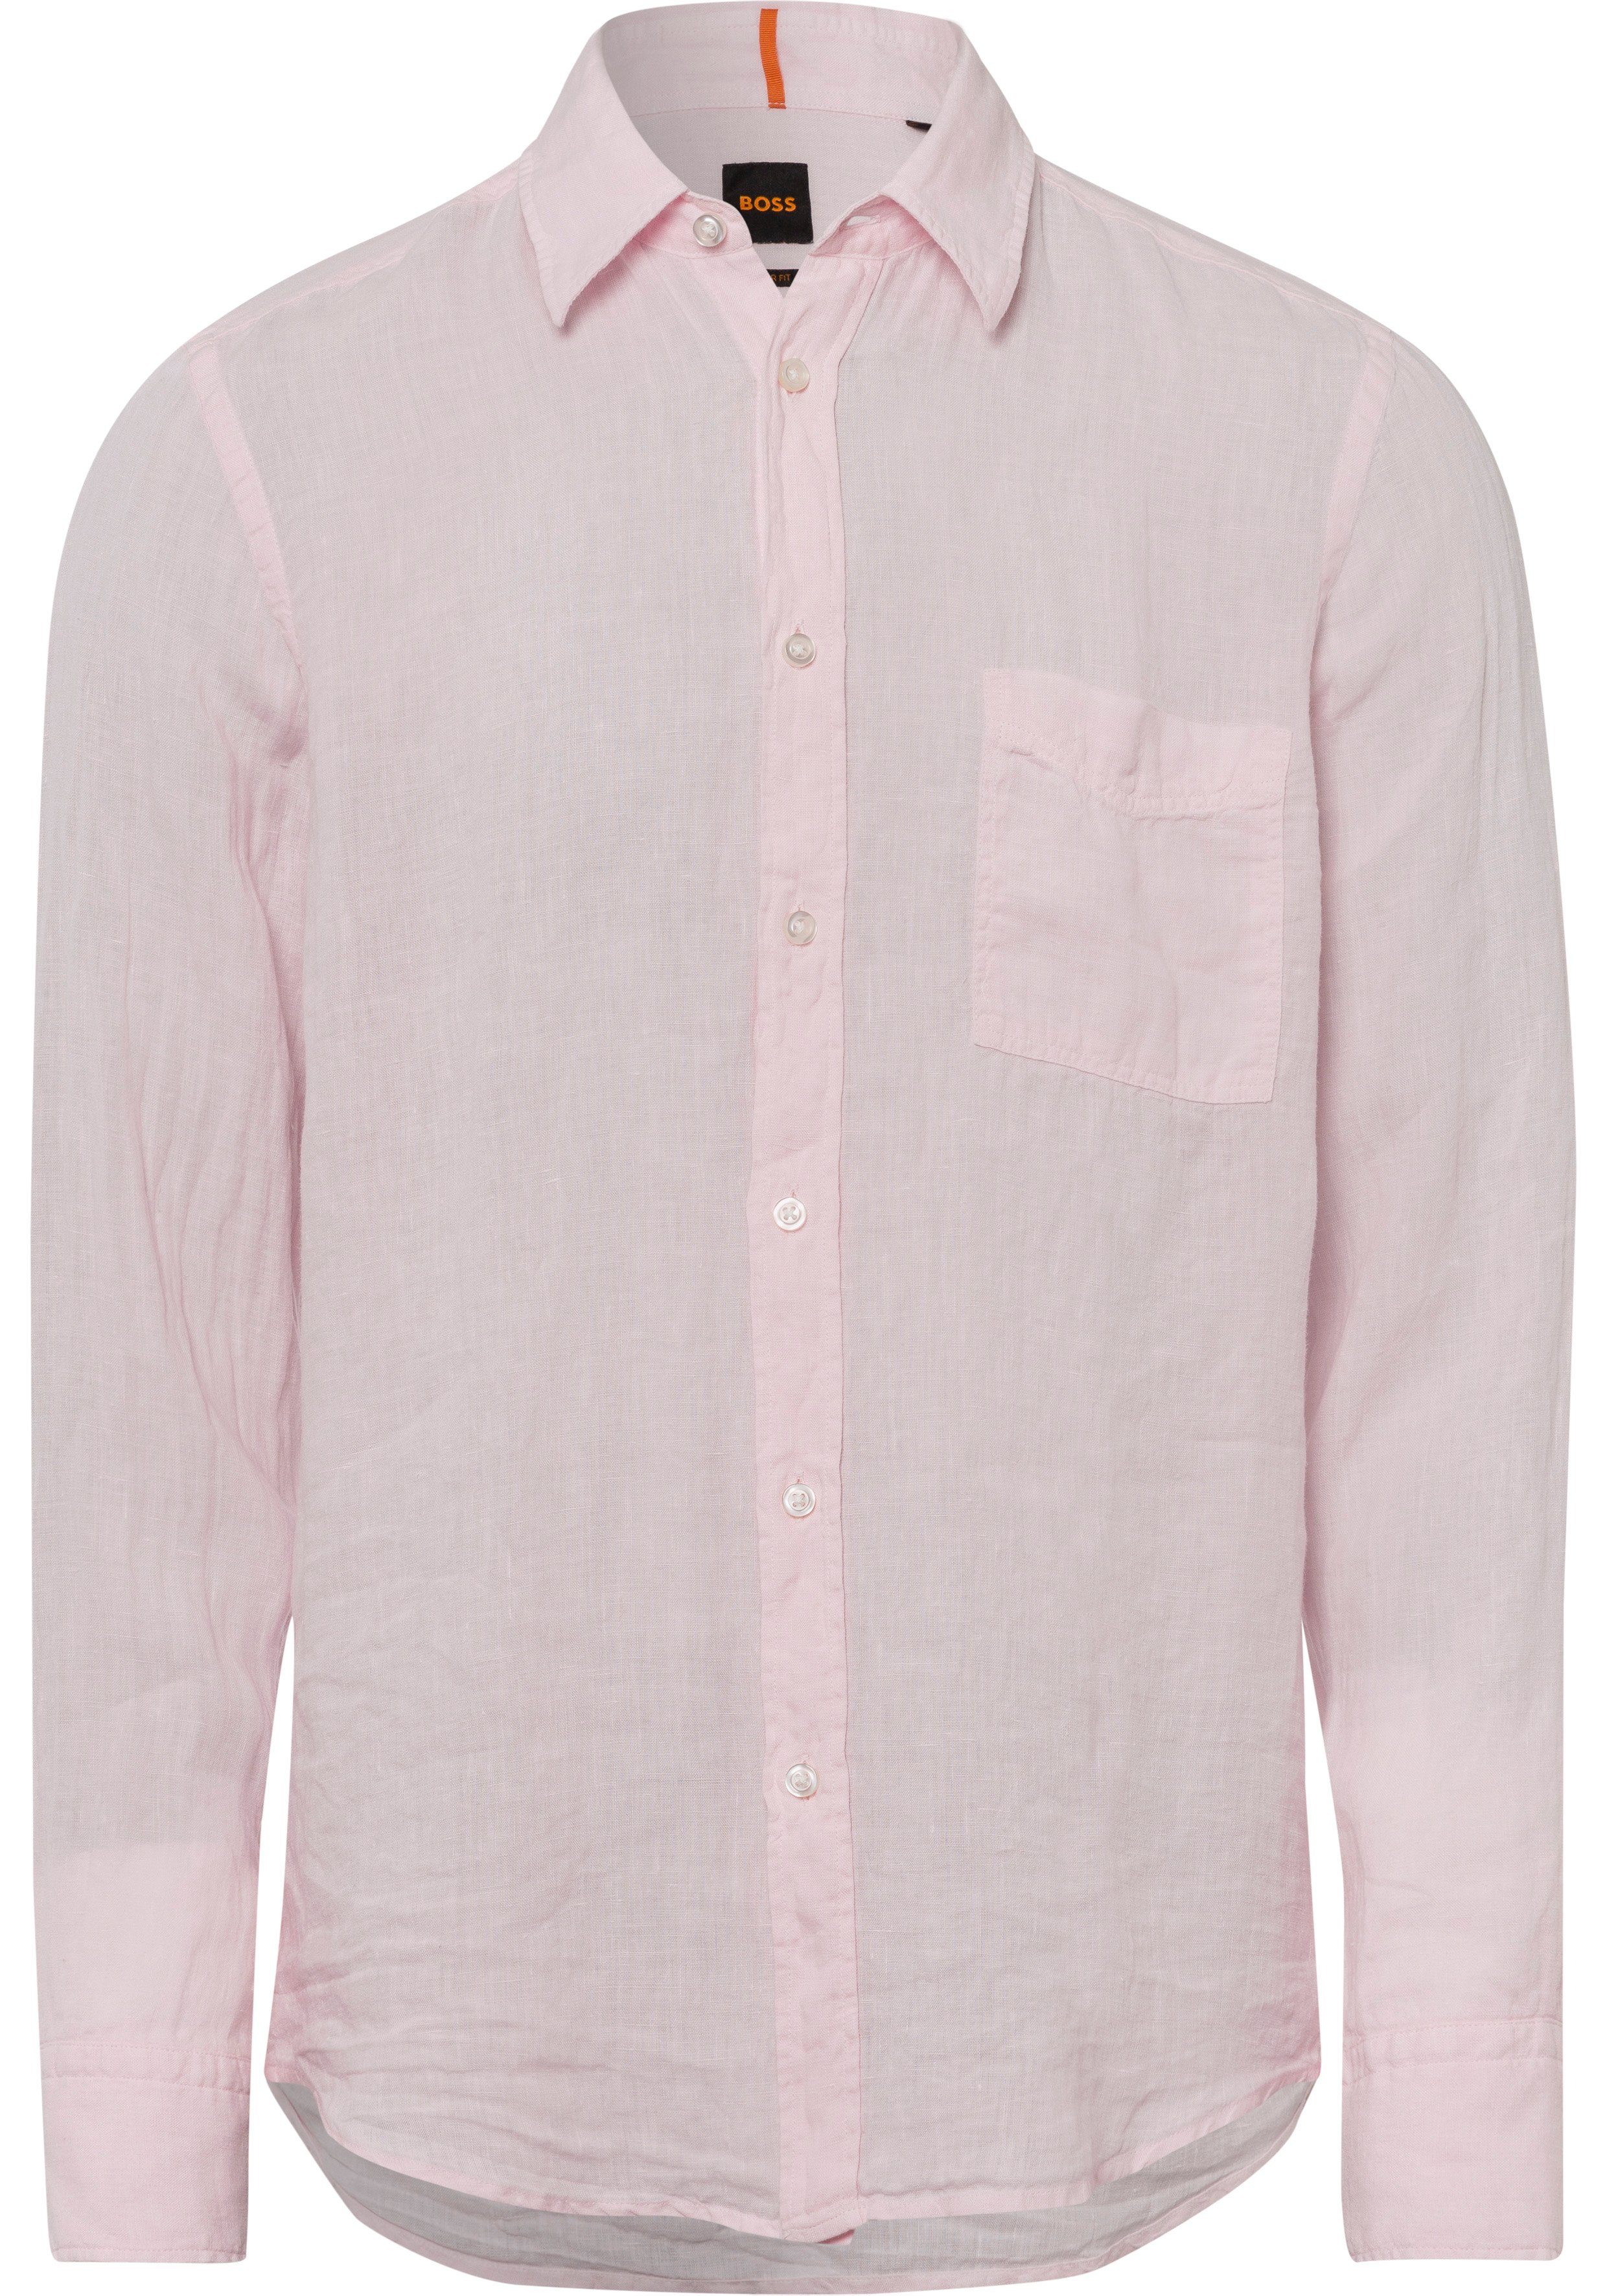 Light/Pastel Langarmshirt BOSS BOSS-Kontrastdetails ORANGE Pink mit 682